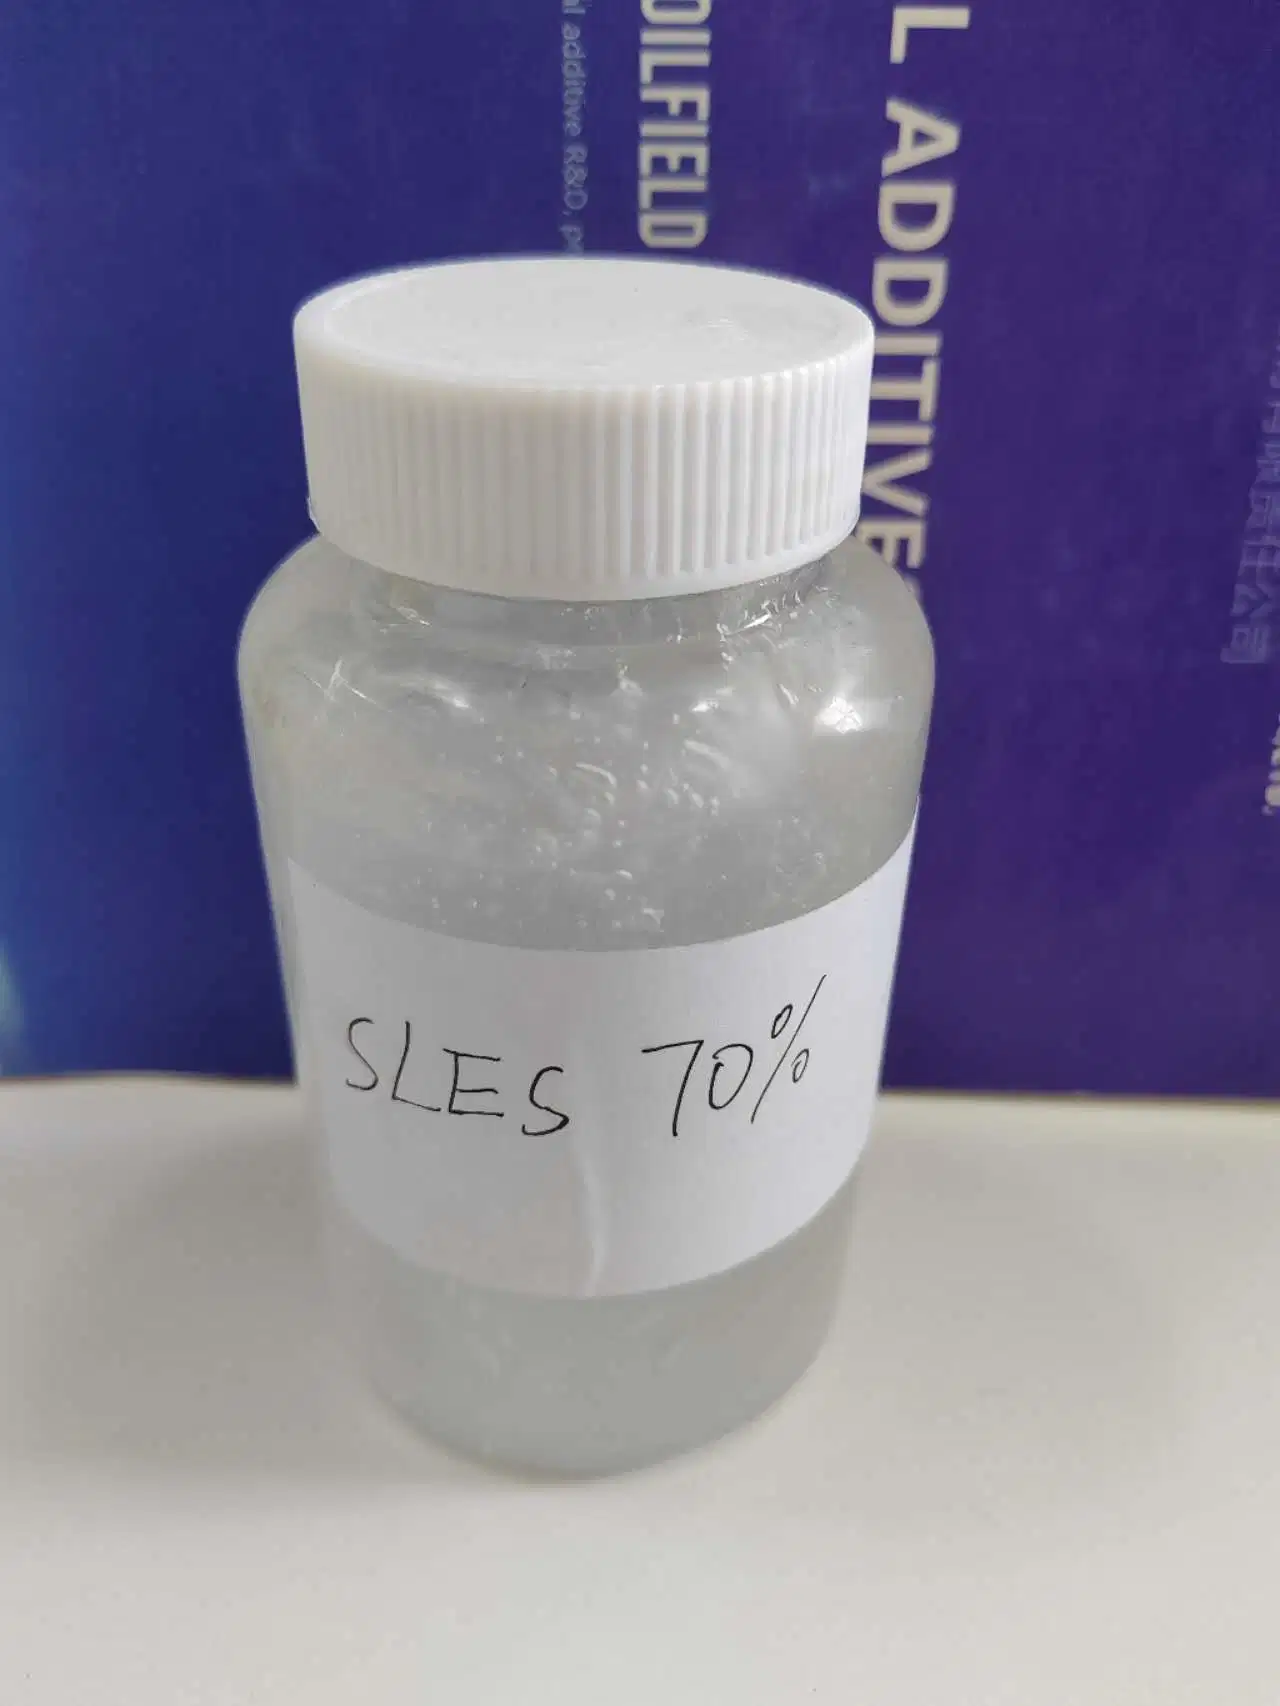 SLES 70% Natrium Lauryl Ether Sulfat für Waschmittel kosmetische Herstellung